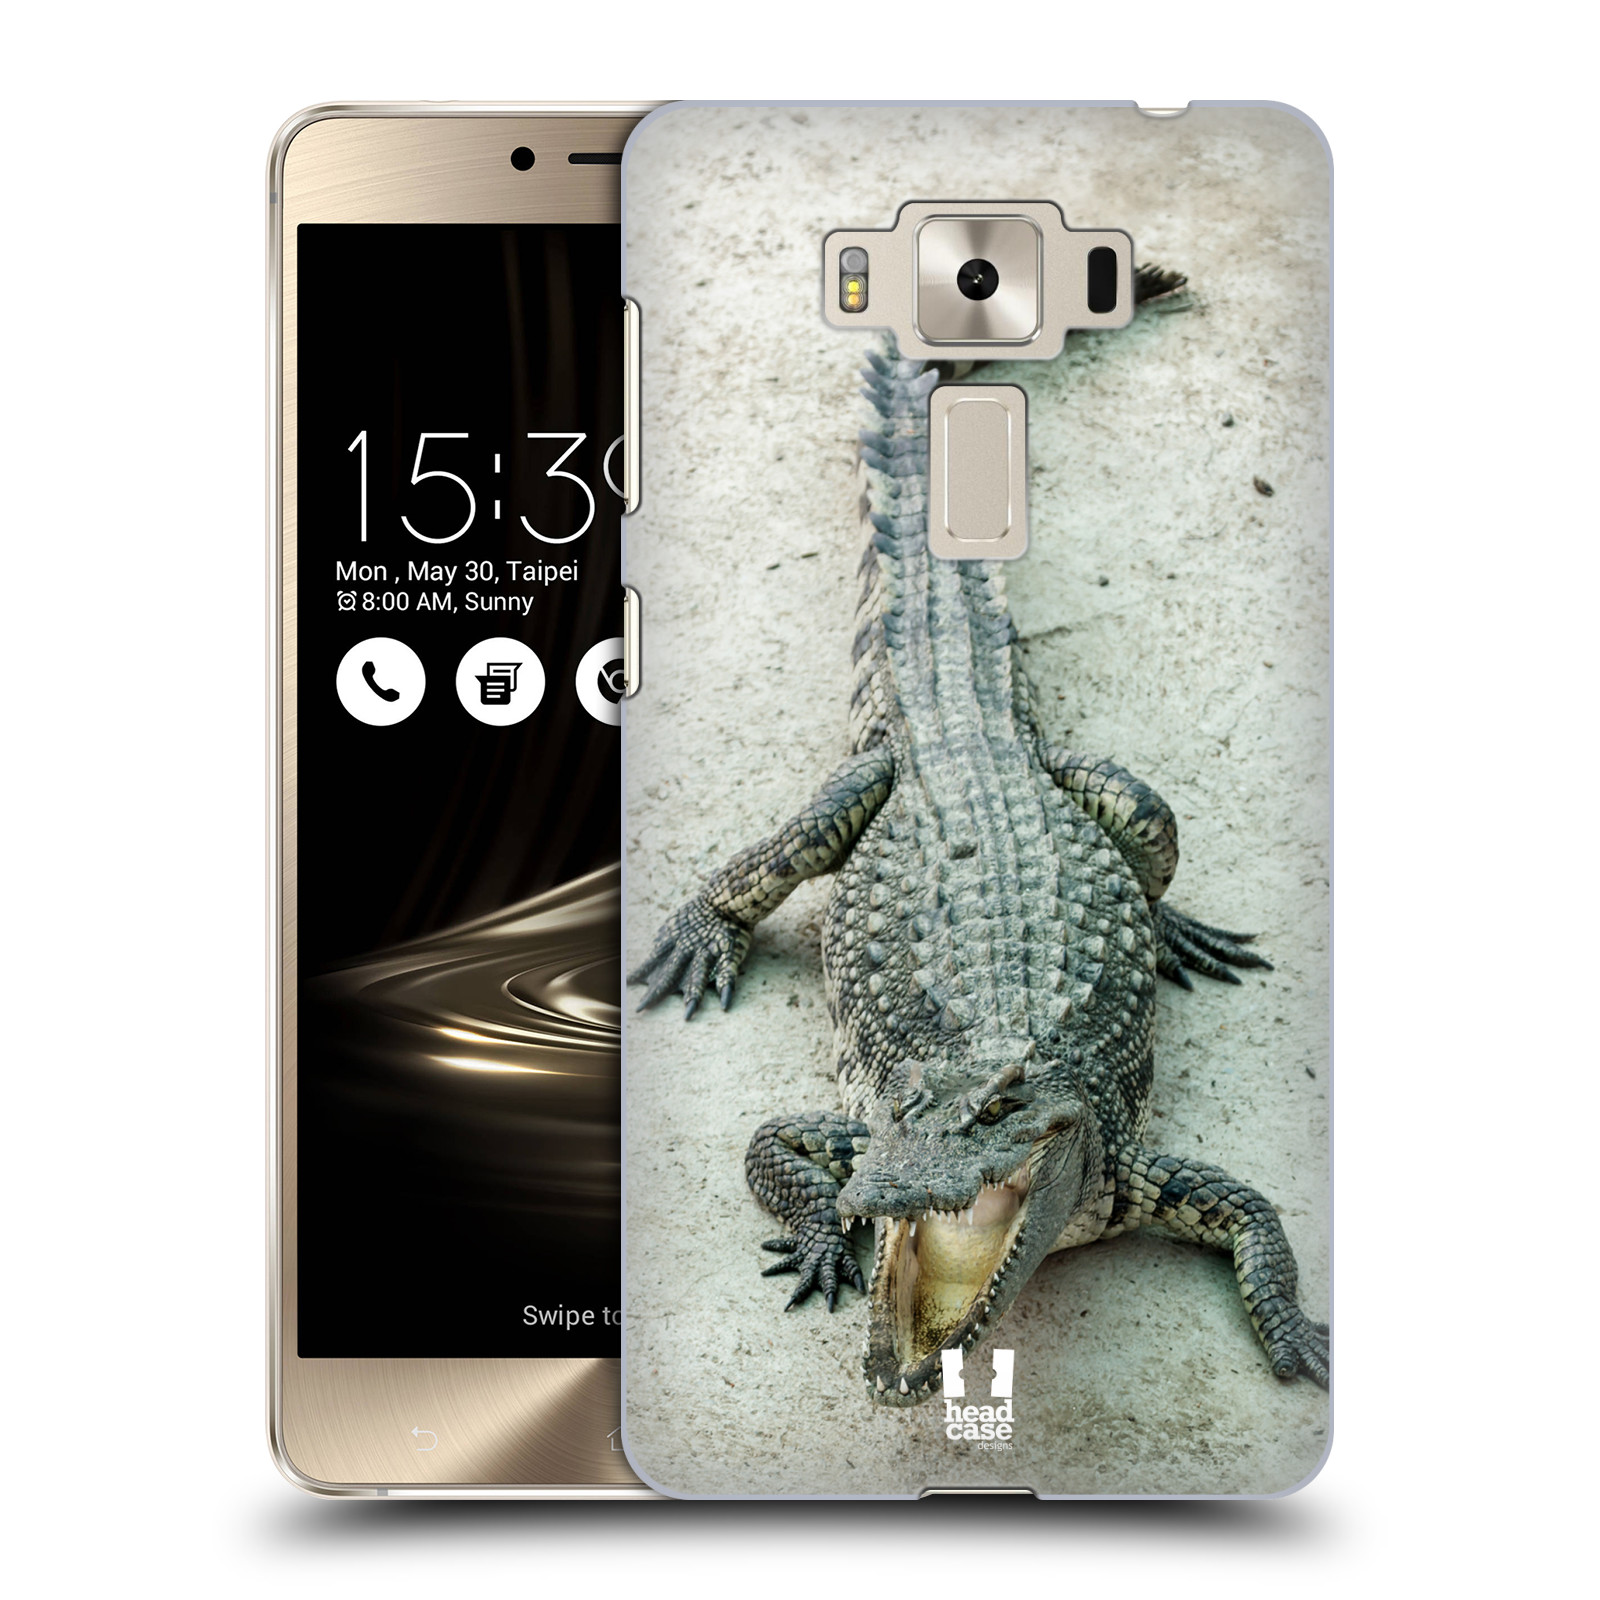 HEAD CASE plastový obal na mobil Asus Zenfone 3 DELUXE ZS550KL vzor Divočina, Divoký život a zvířata foto KROKODÝL, KAJMAN